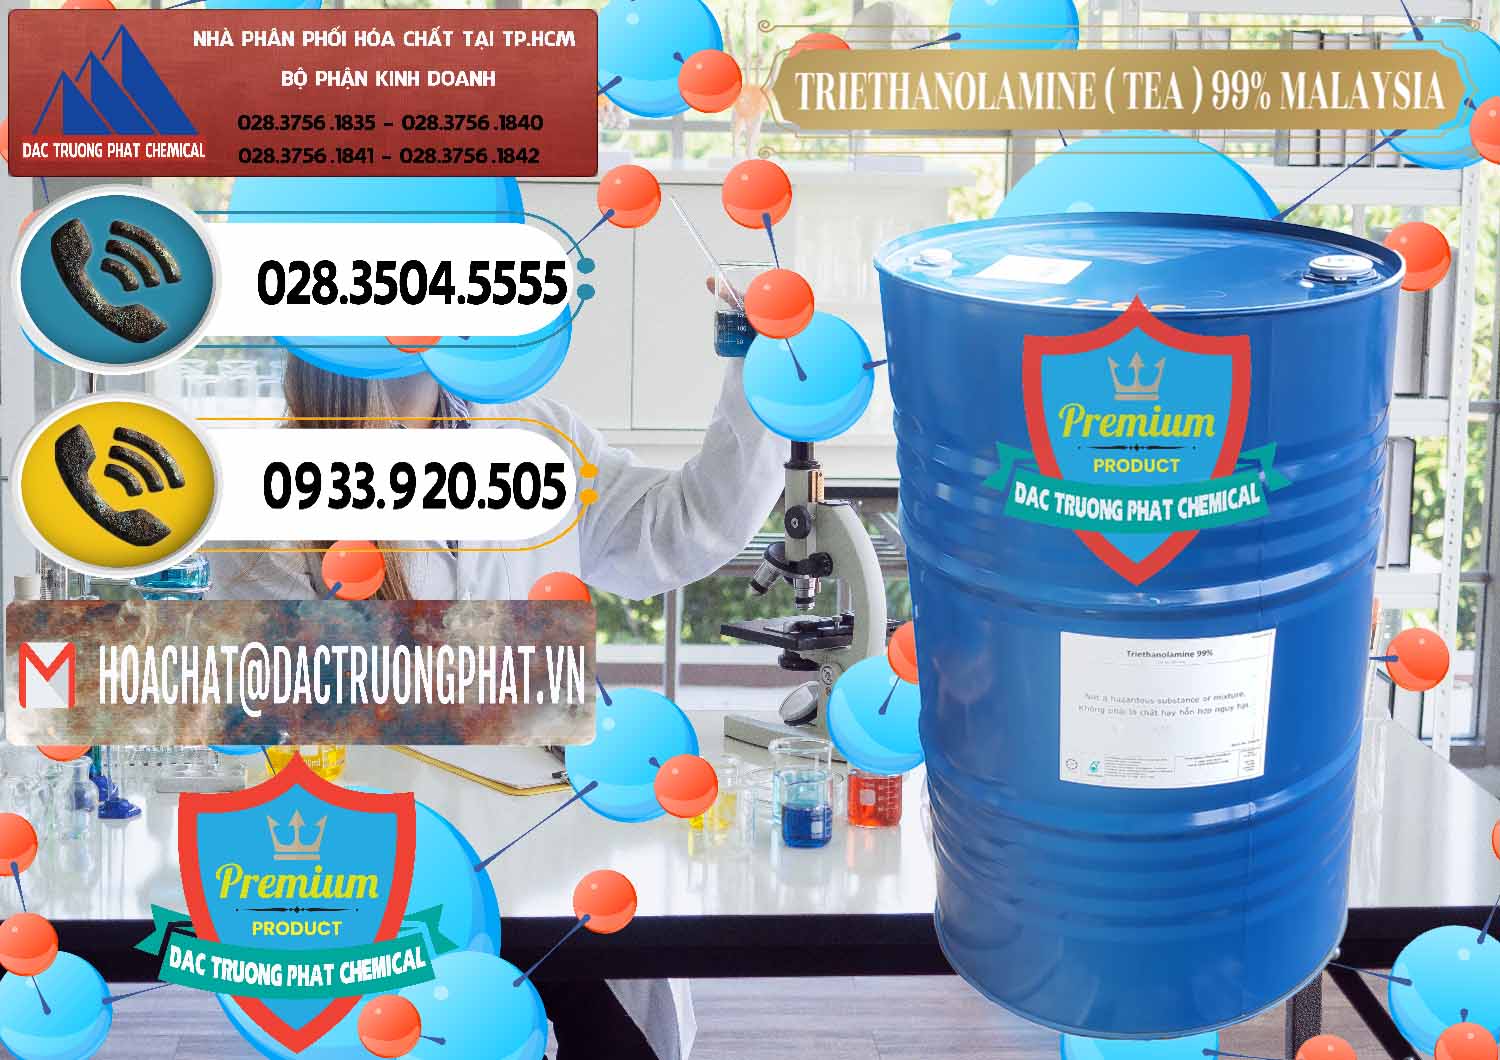 Công ty chuyên bán ( phân phối ) TEA - Triethanolamine 99% Mã Lai Malaysia - 0323 - Công ty cung cấp - phân phối hóa chất tại TP.HCM - hoachatdetnhuom.vn